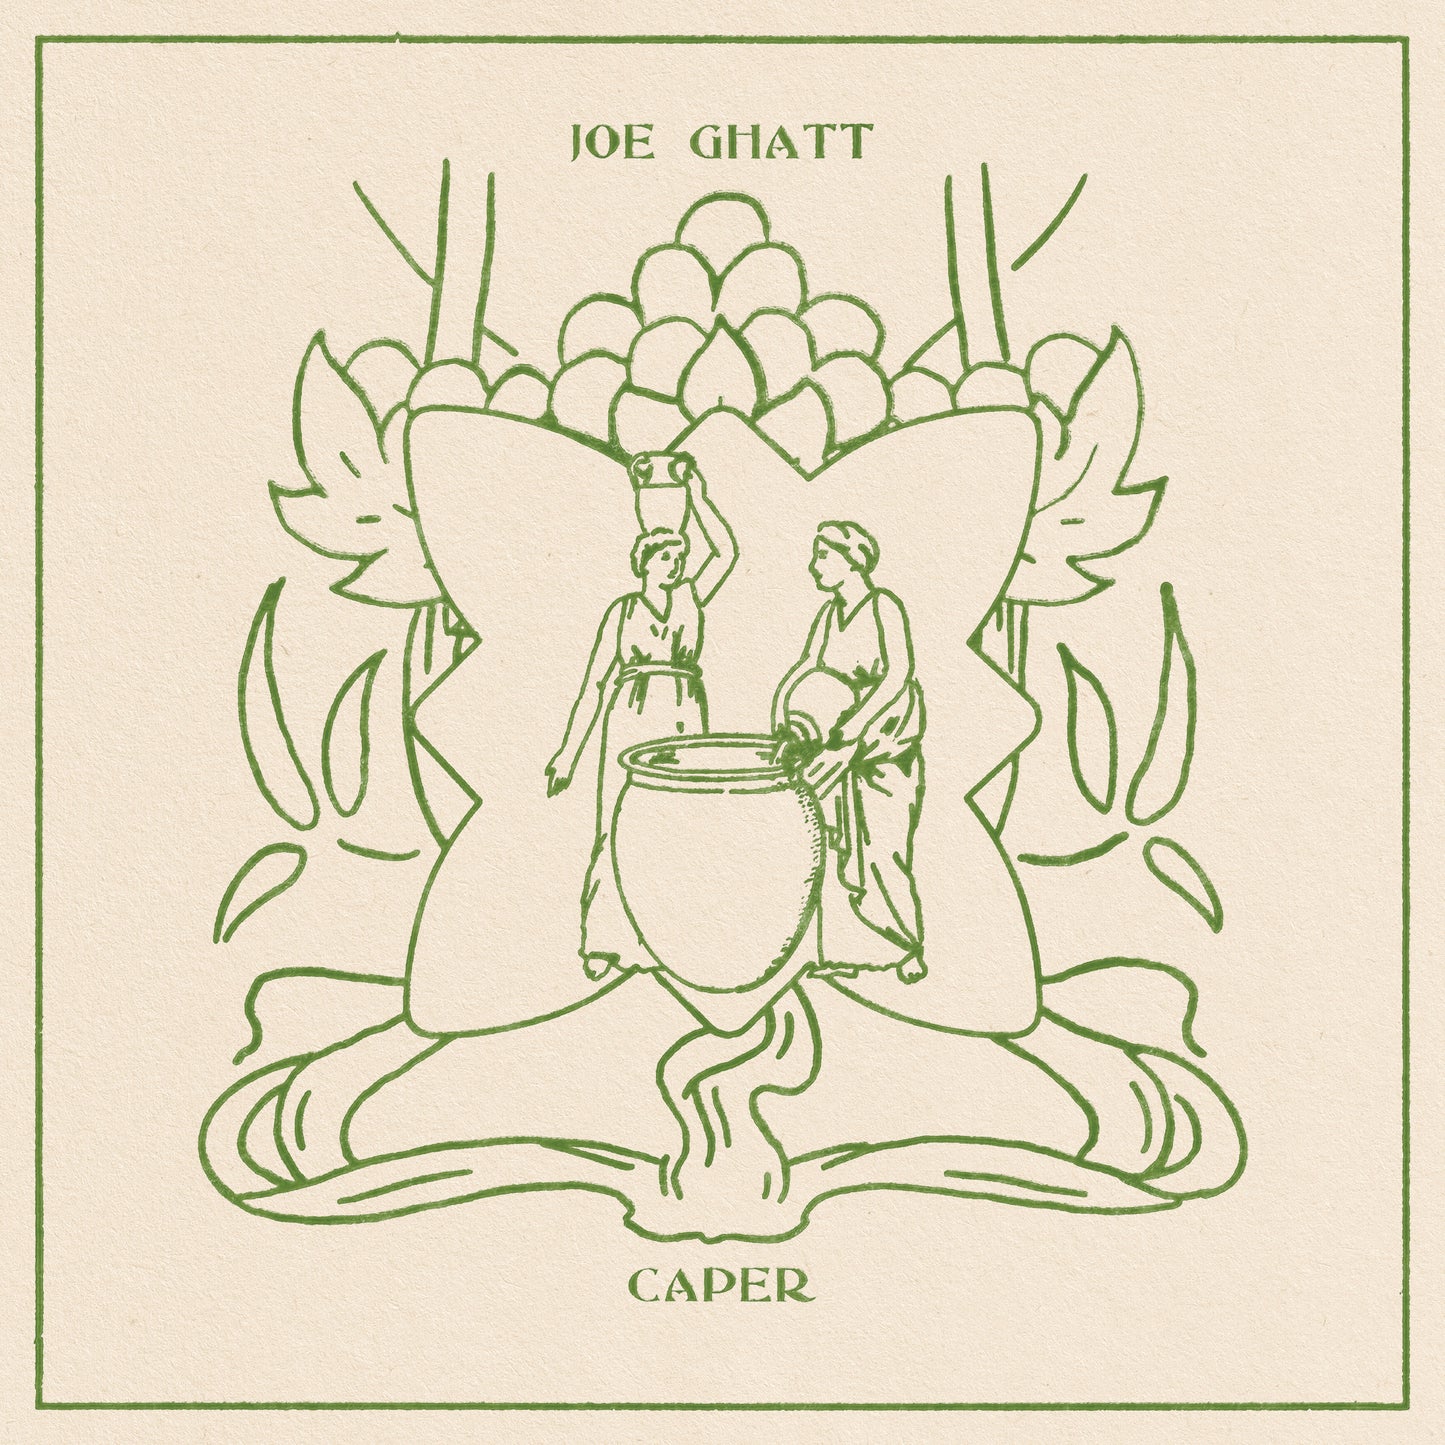 Joe Ghatt - Caper | Buy the Vinyl LP from Flying Nun Records